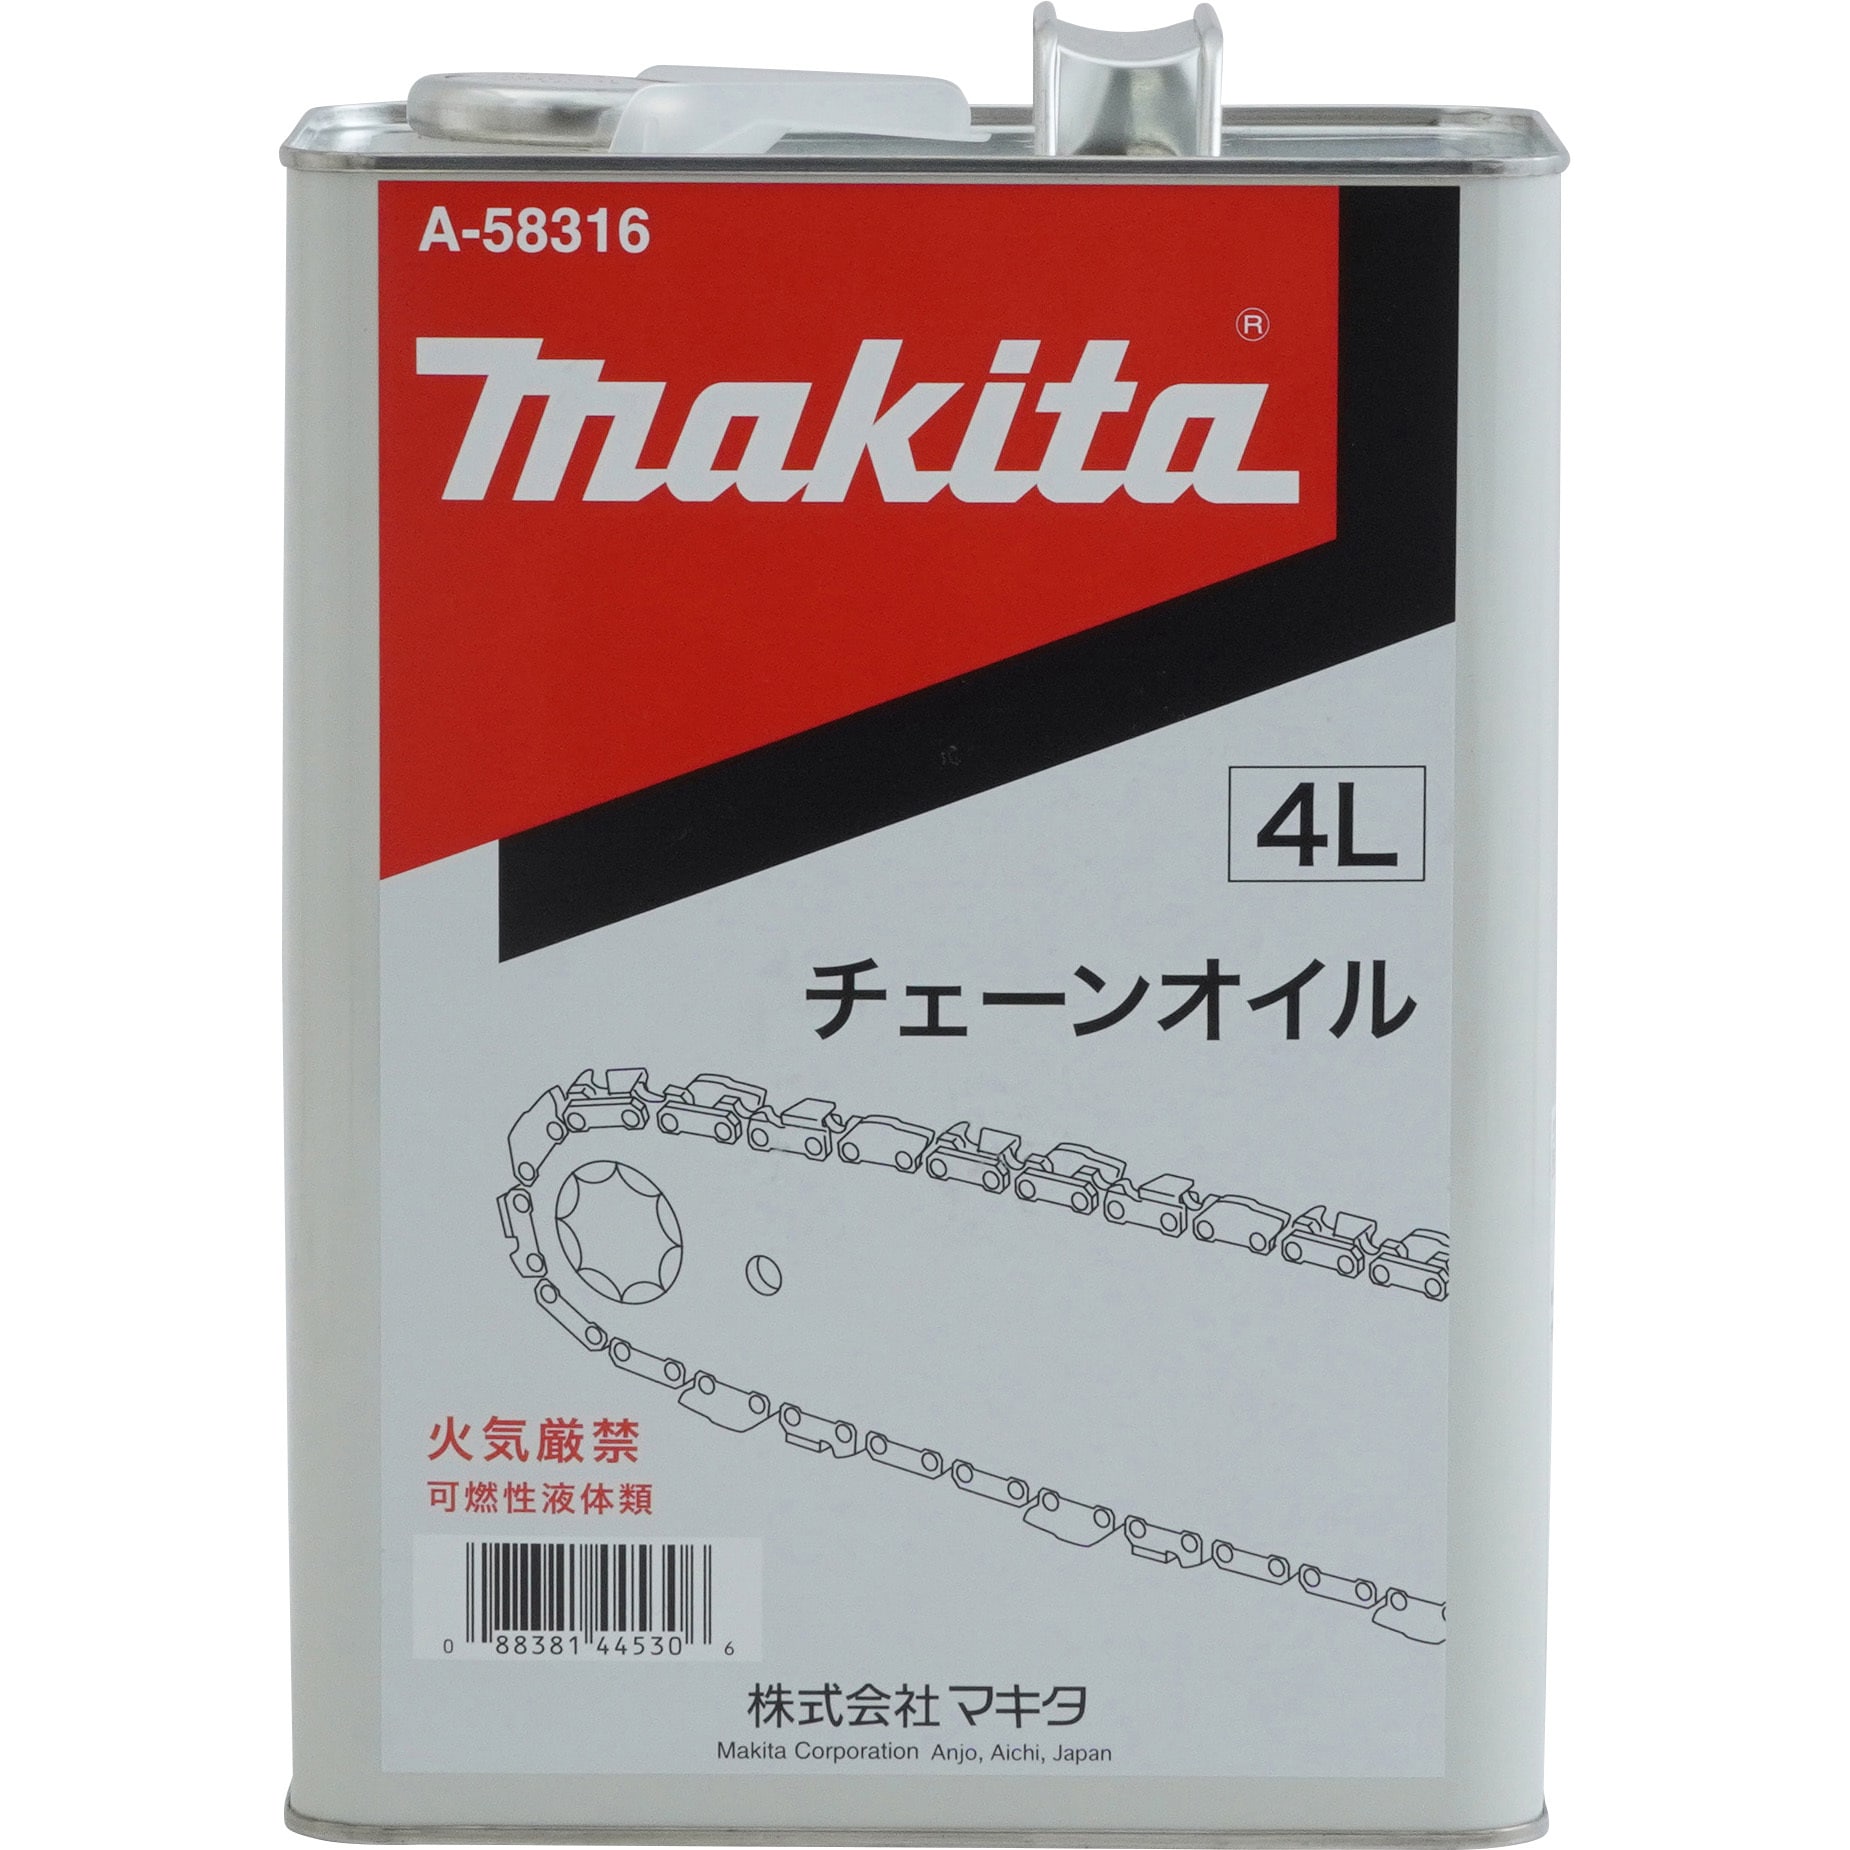 97％以上節約 マキタ電動工具 チェーンオイル チェーン刃潤滑用 4L缶 A-58316 旧A-05153